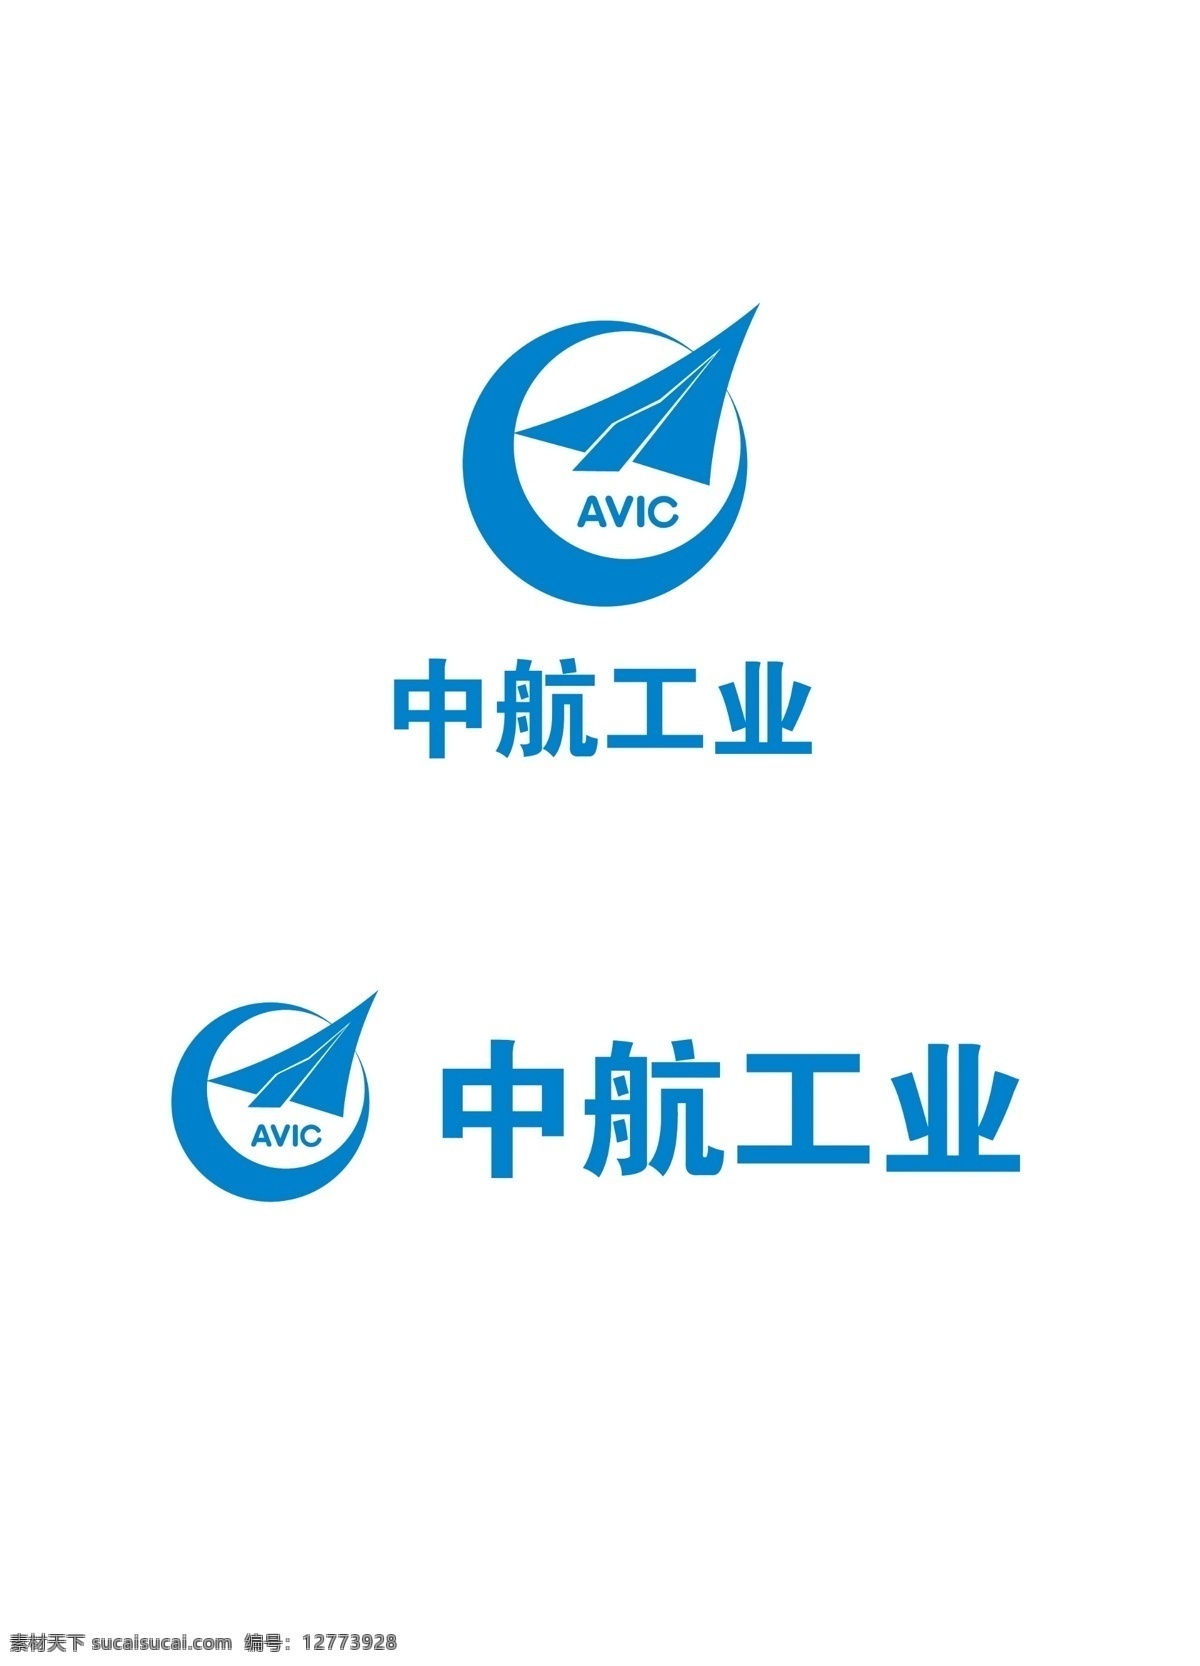 中航 工业 标志 标准 组合 中航标徽 标徽 中航标志 标志标准组合 中航工业标志 中航工业标徽